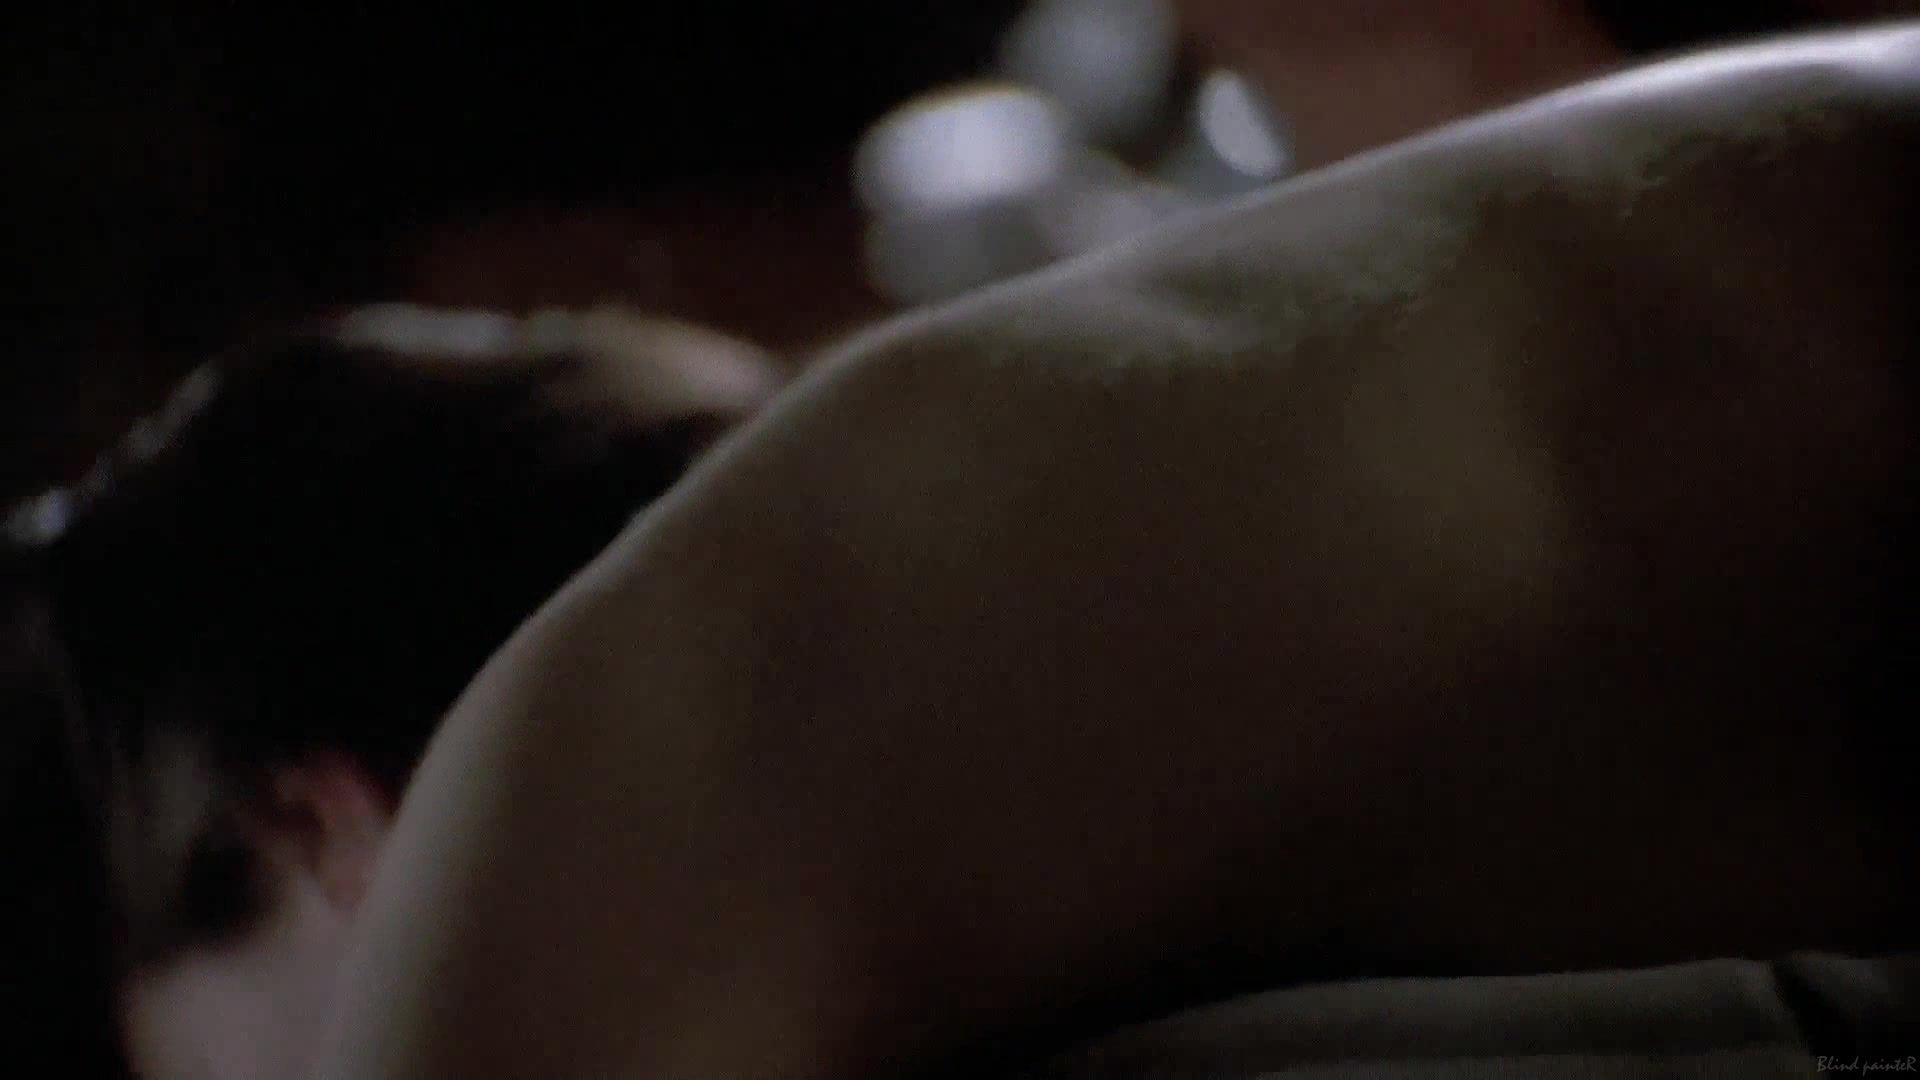 Vaginal Linda Fiorentino nude - The Last Seduction (1994) Suckingdick - 1